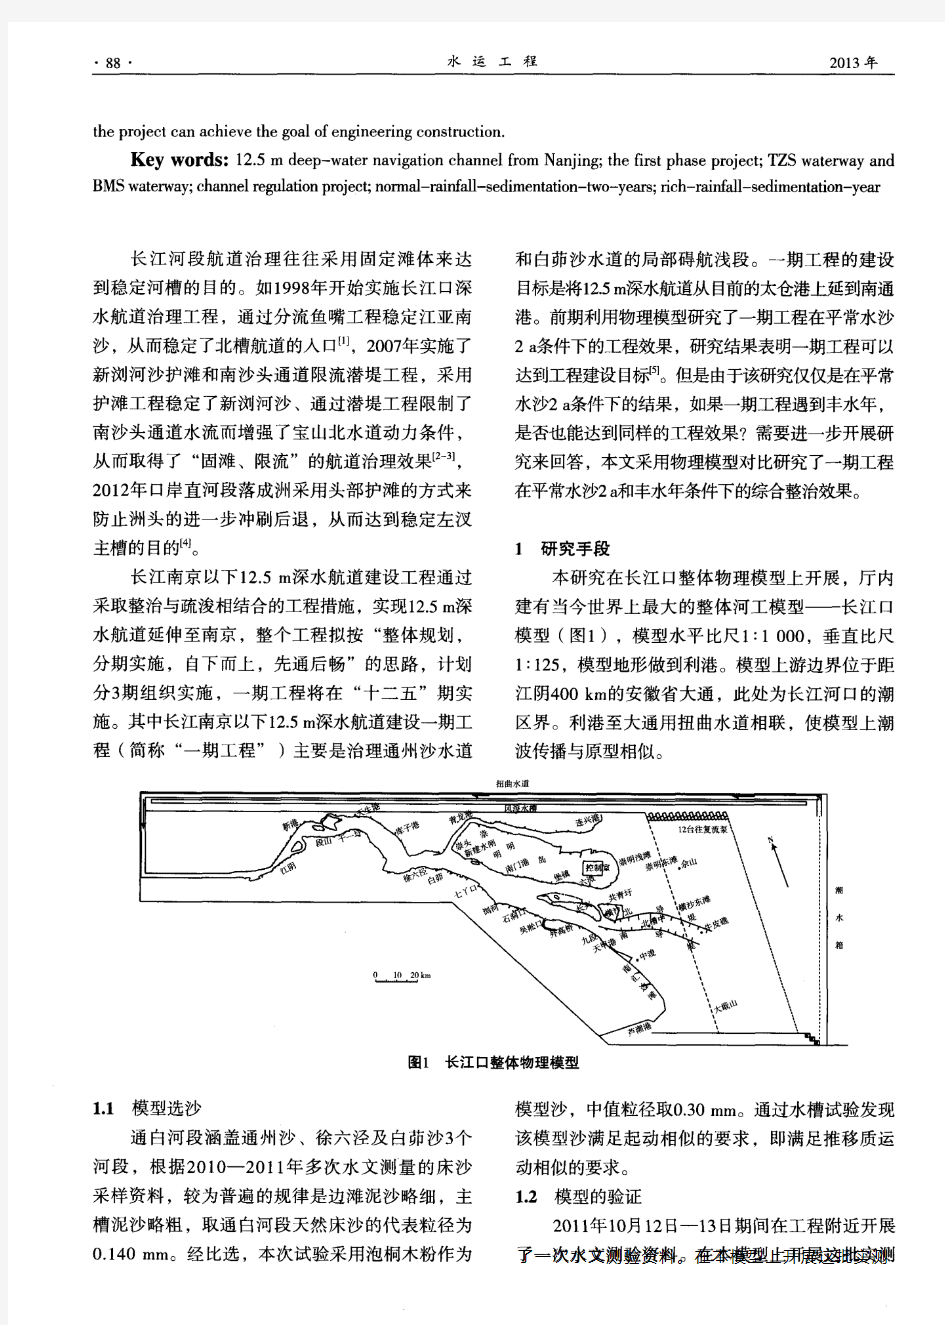 长江南京以下12.5 m深水航道一期工程整治效果多水文条件物模研究